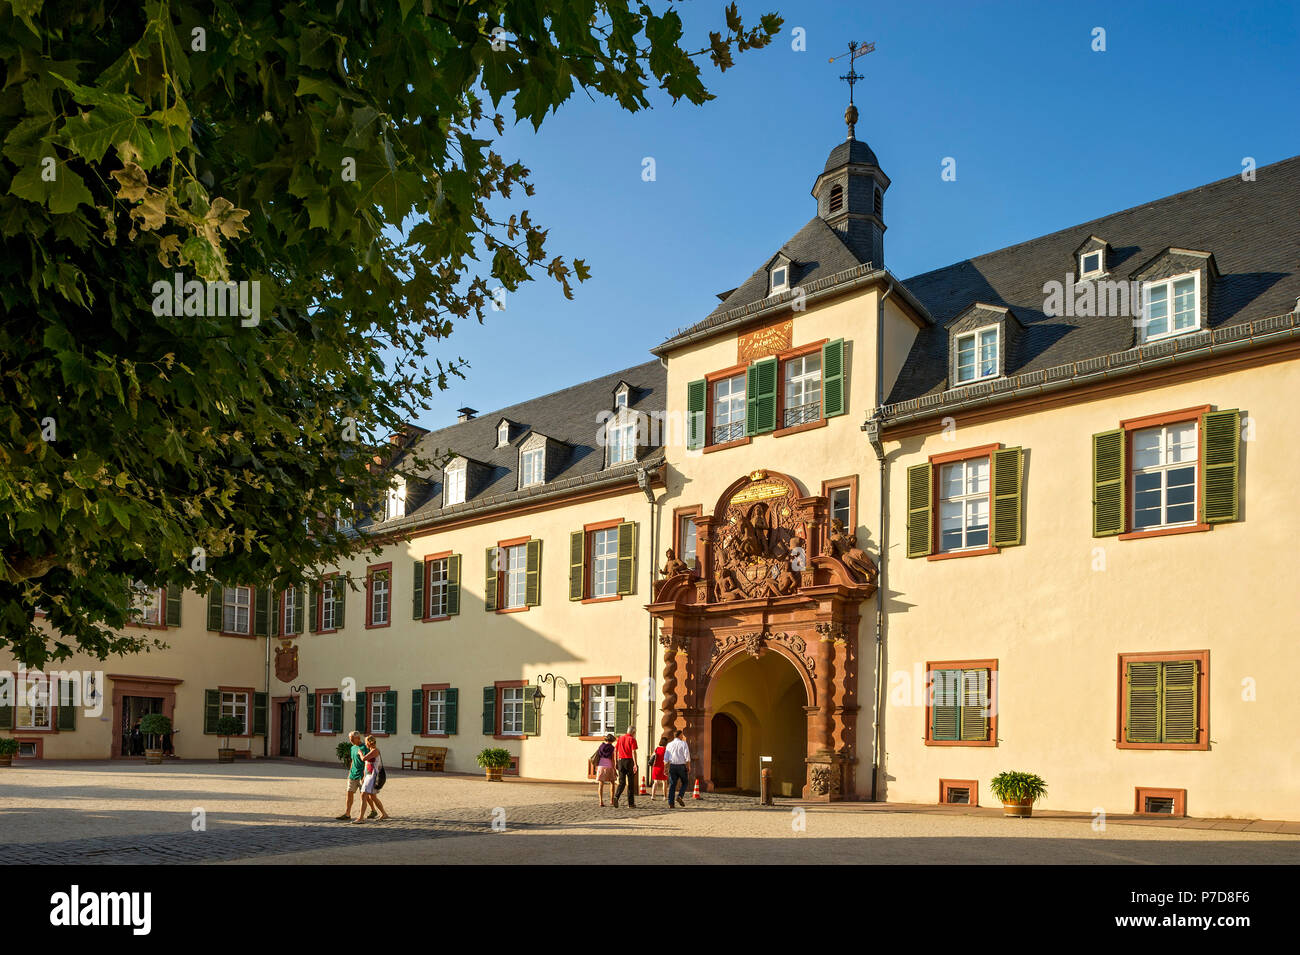 El landgrave castillo barroco y puerta superior, Bad Homburg vor der Höhe, Hesse, Alemania Foto de stock